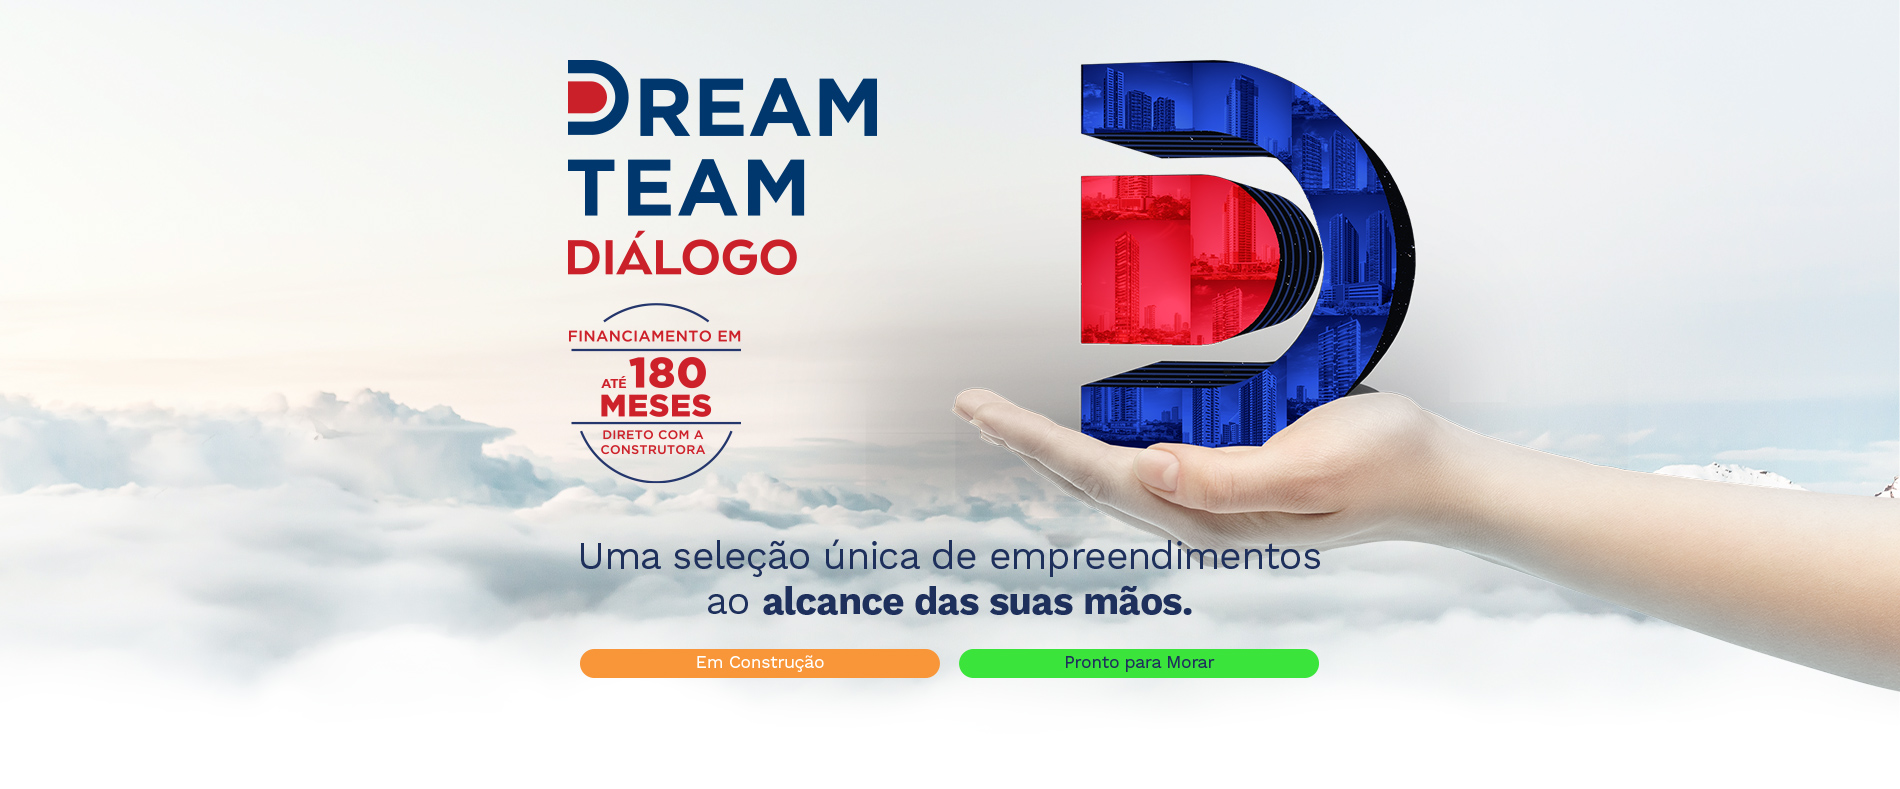 Dream Team Dialogo